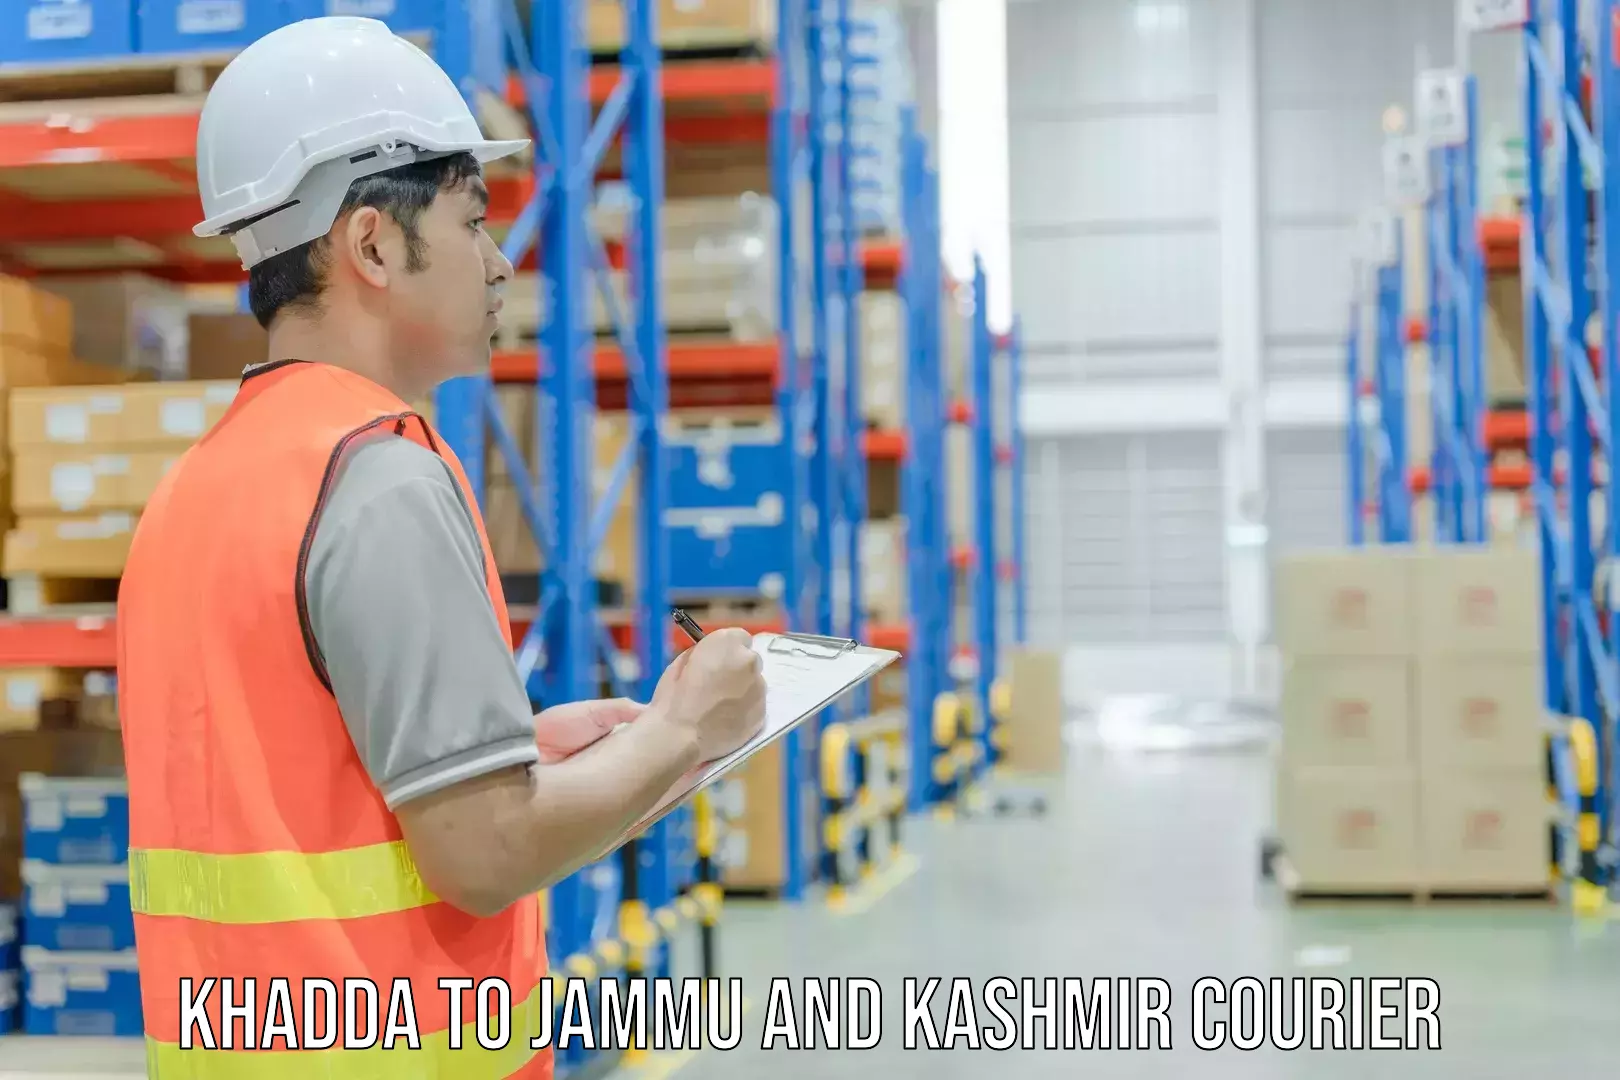 Express logistics providers Khadda to Anantnag